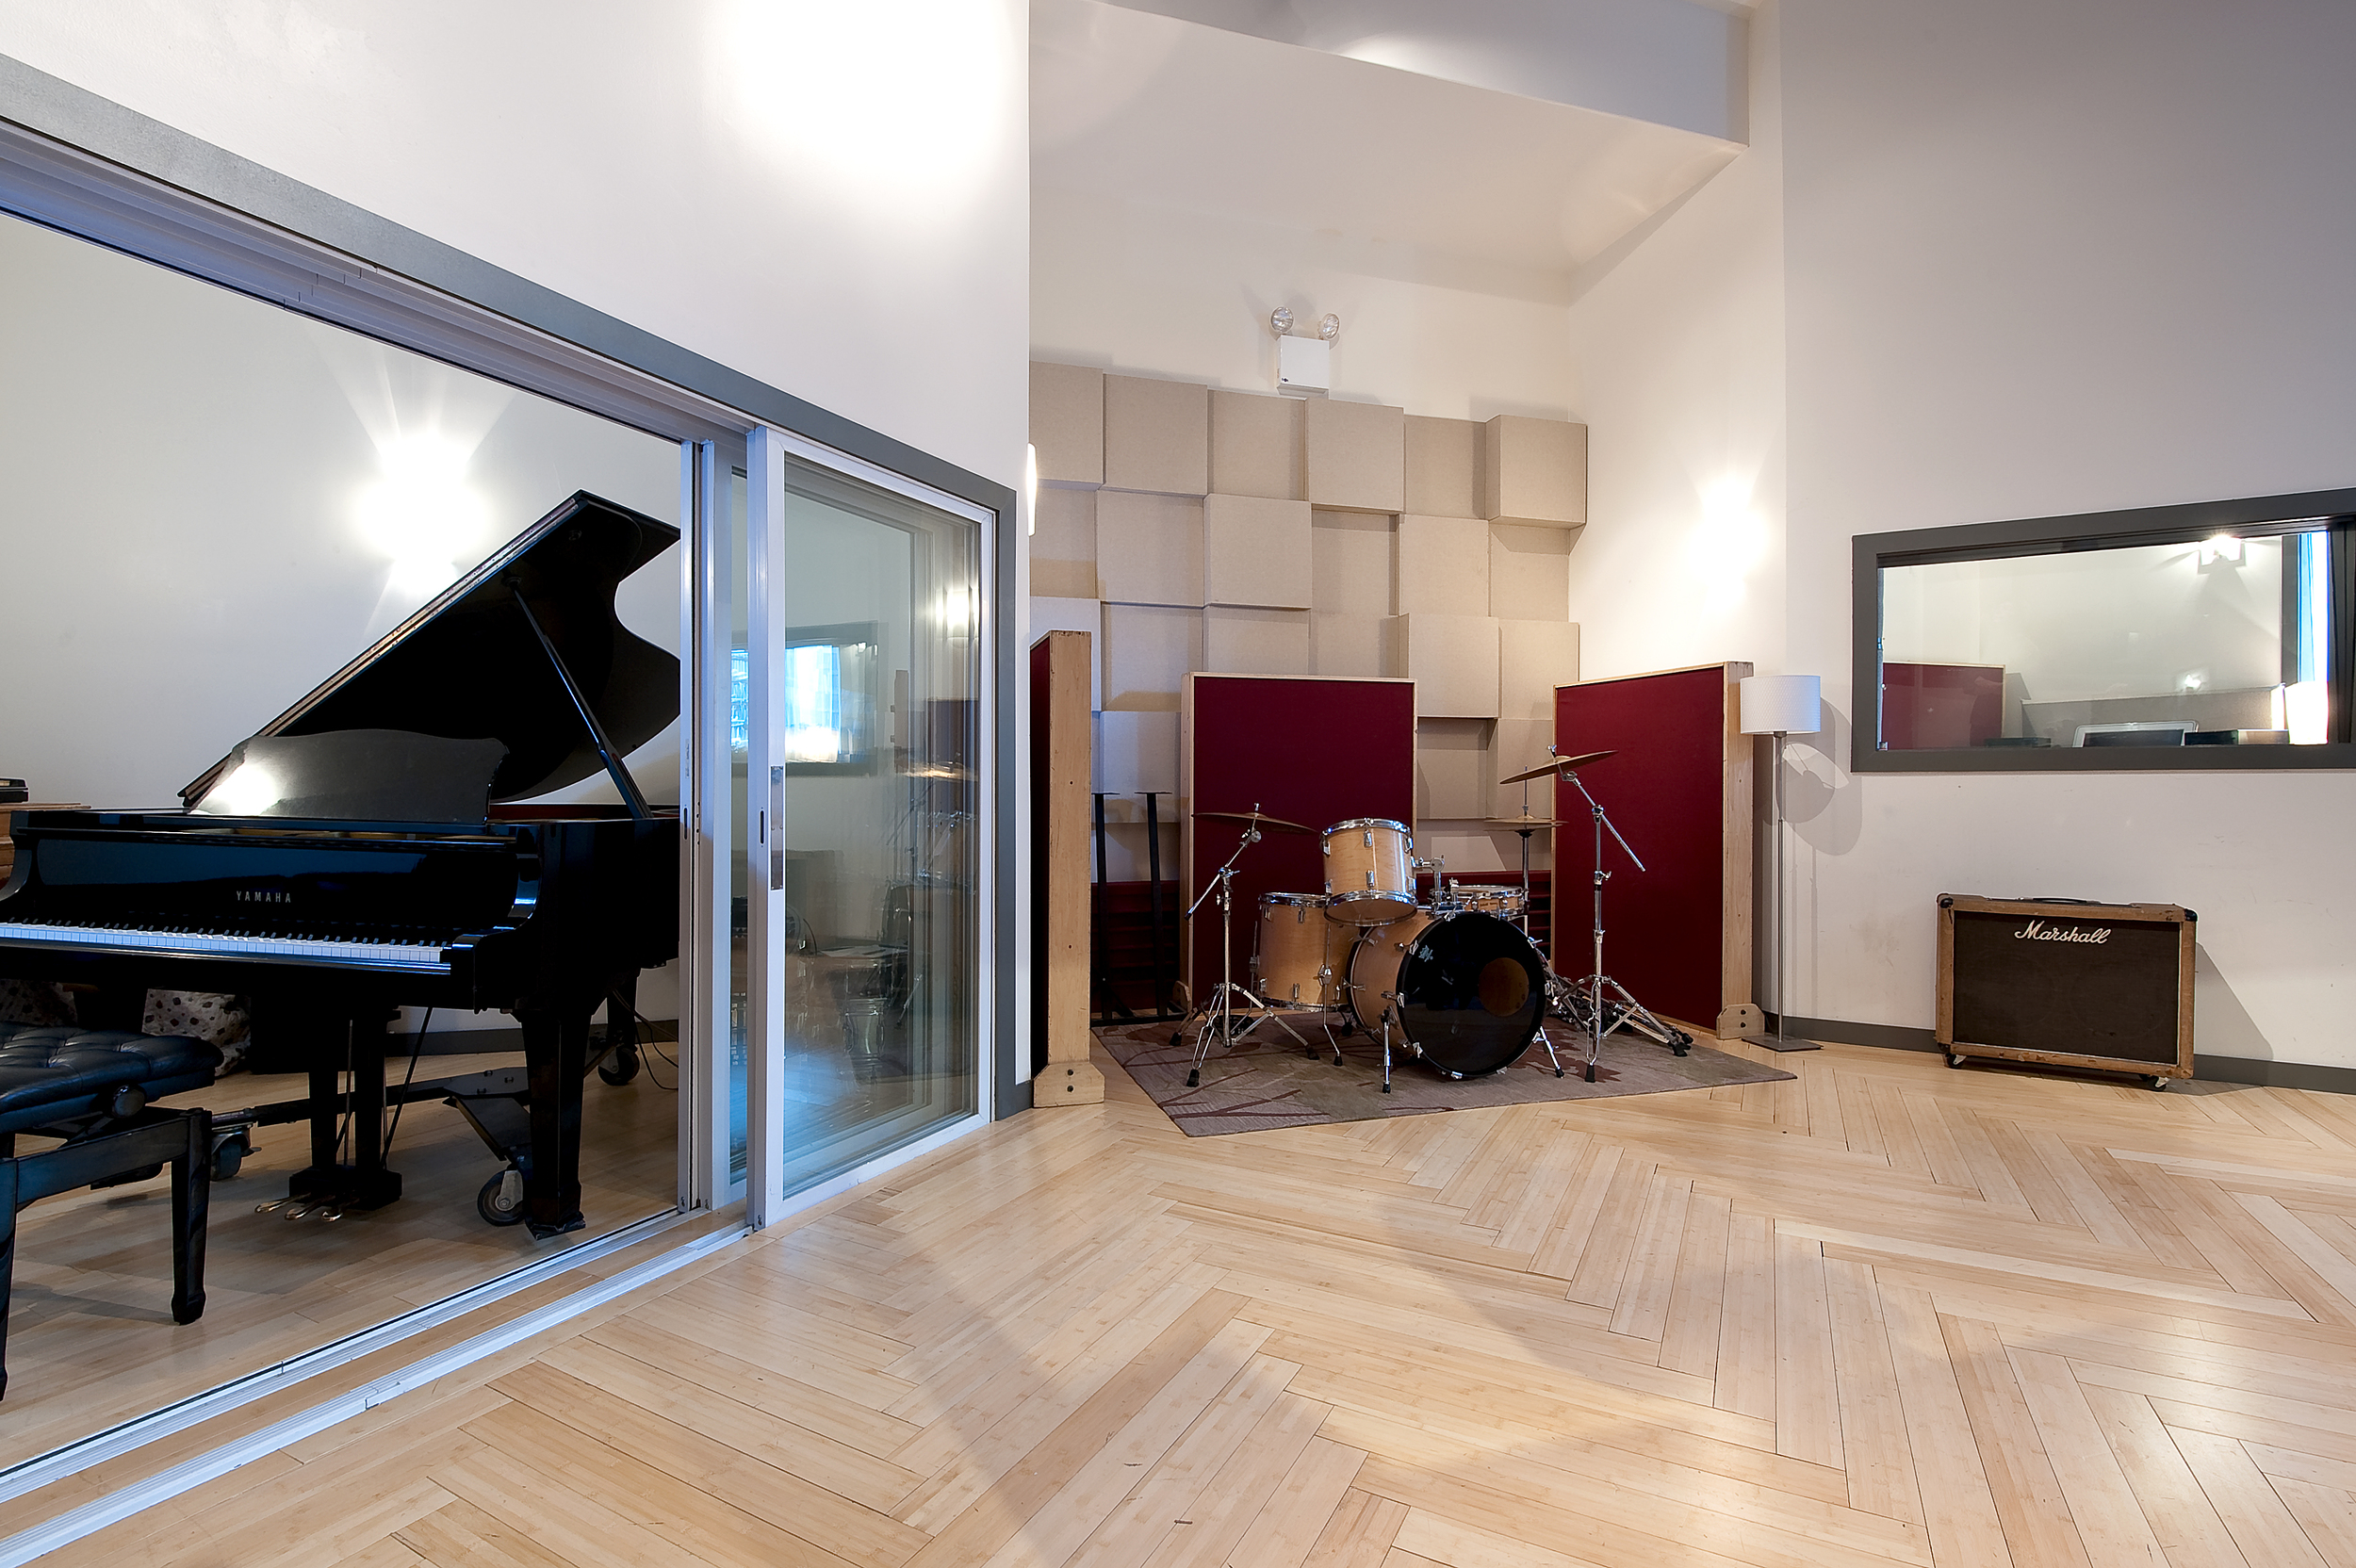 Mezzanine Live Room Studio